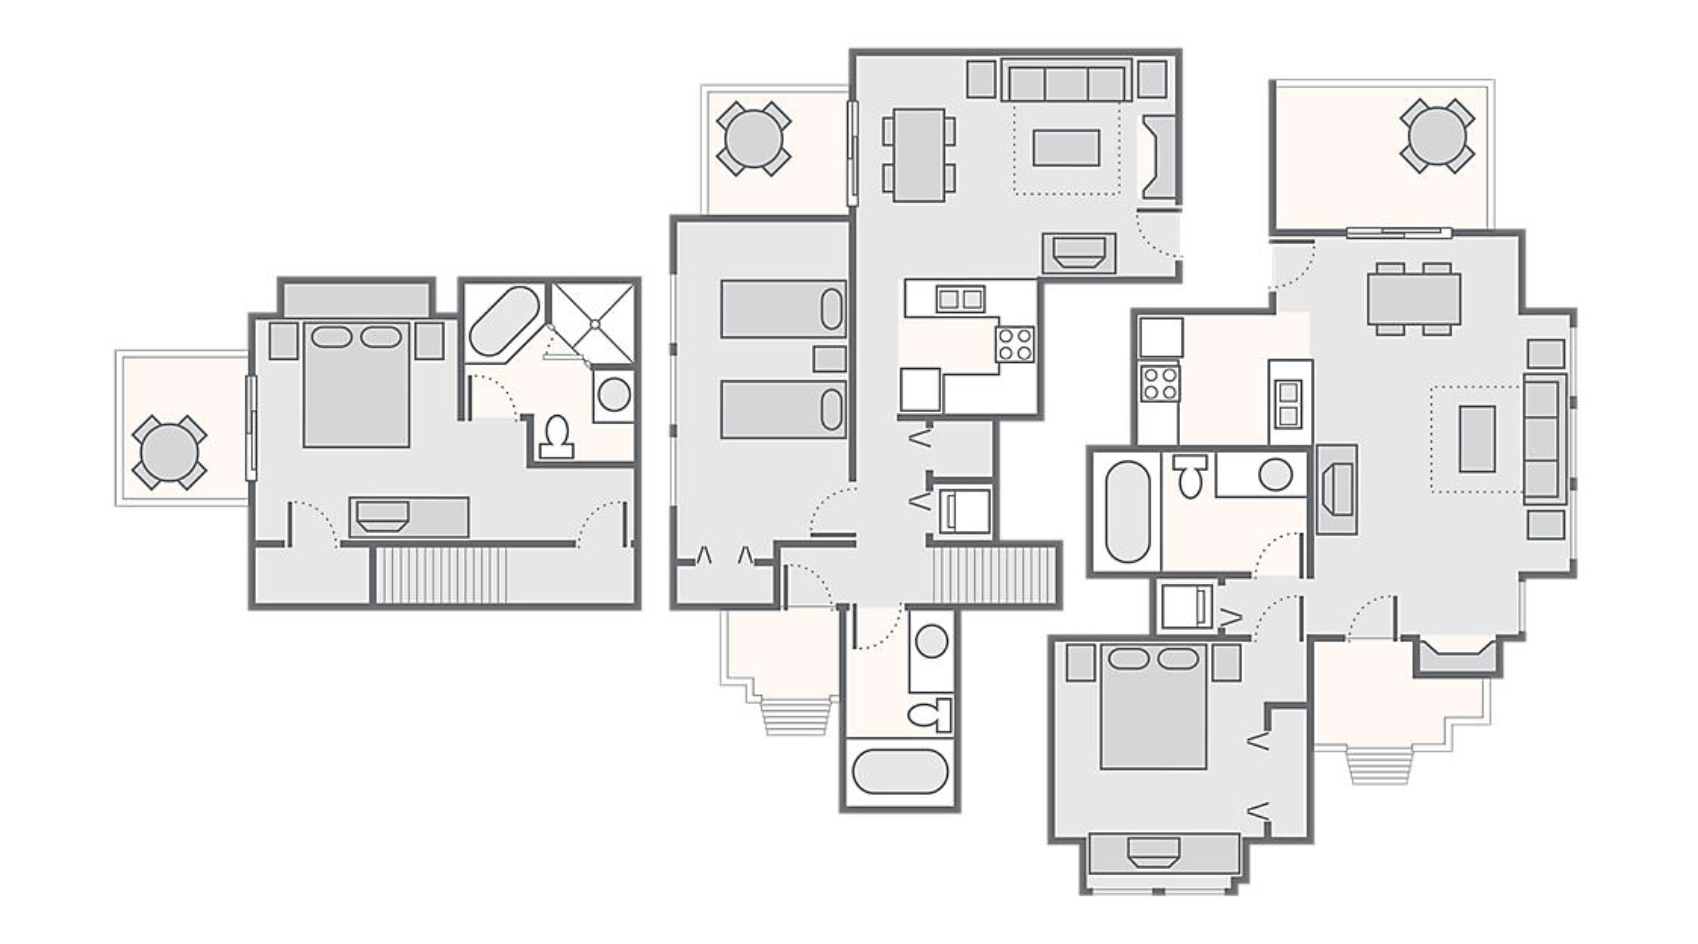 Combined 3 Bedroom Townhome 1,700 SQ FT (1 Bedroom Townhome 500 SQ FT, 2 Bedroom Townhome 1,200 SQ FT)